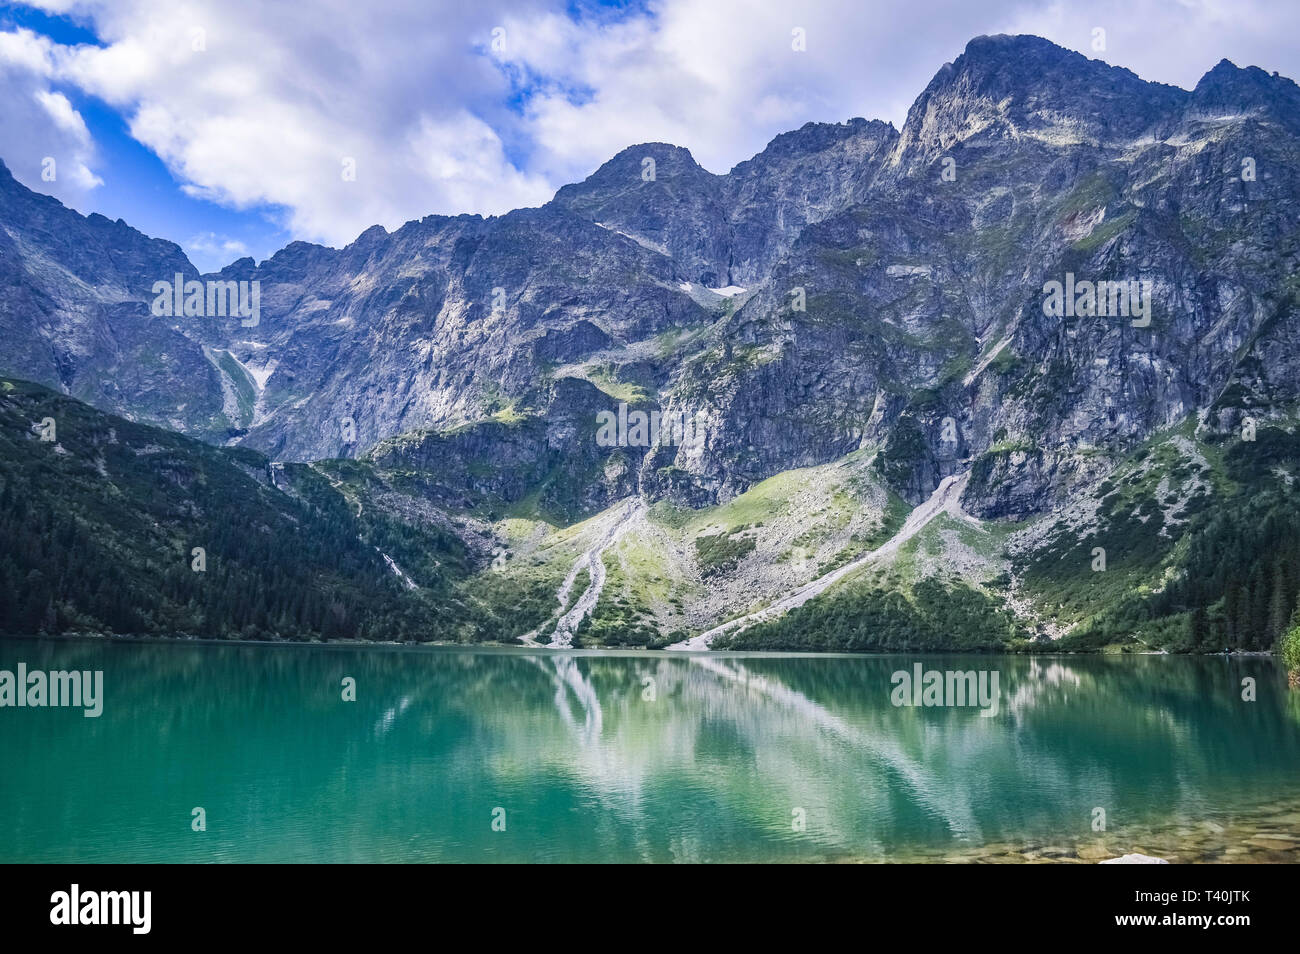 Le très beau lac de Morskie Oko dans les Tatras, près de Zakopane, Pologne Banque D'Images